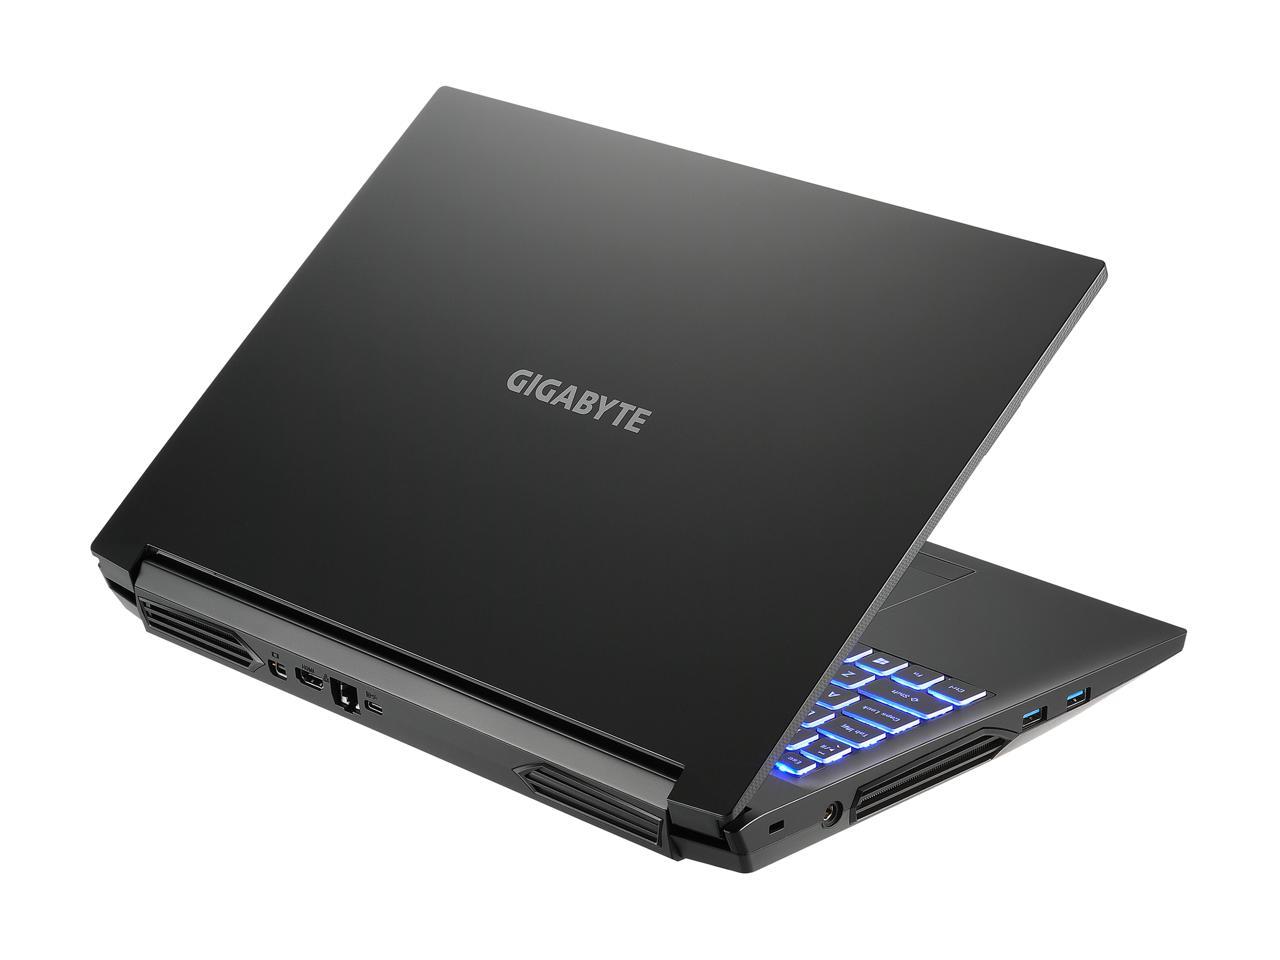 Купить Ноутбук GIGABYTE A5 K1 (K1-BEE2150SB) - ITMag